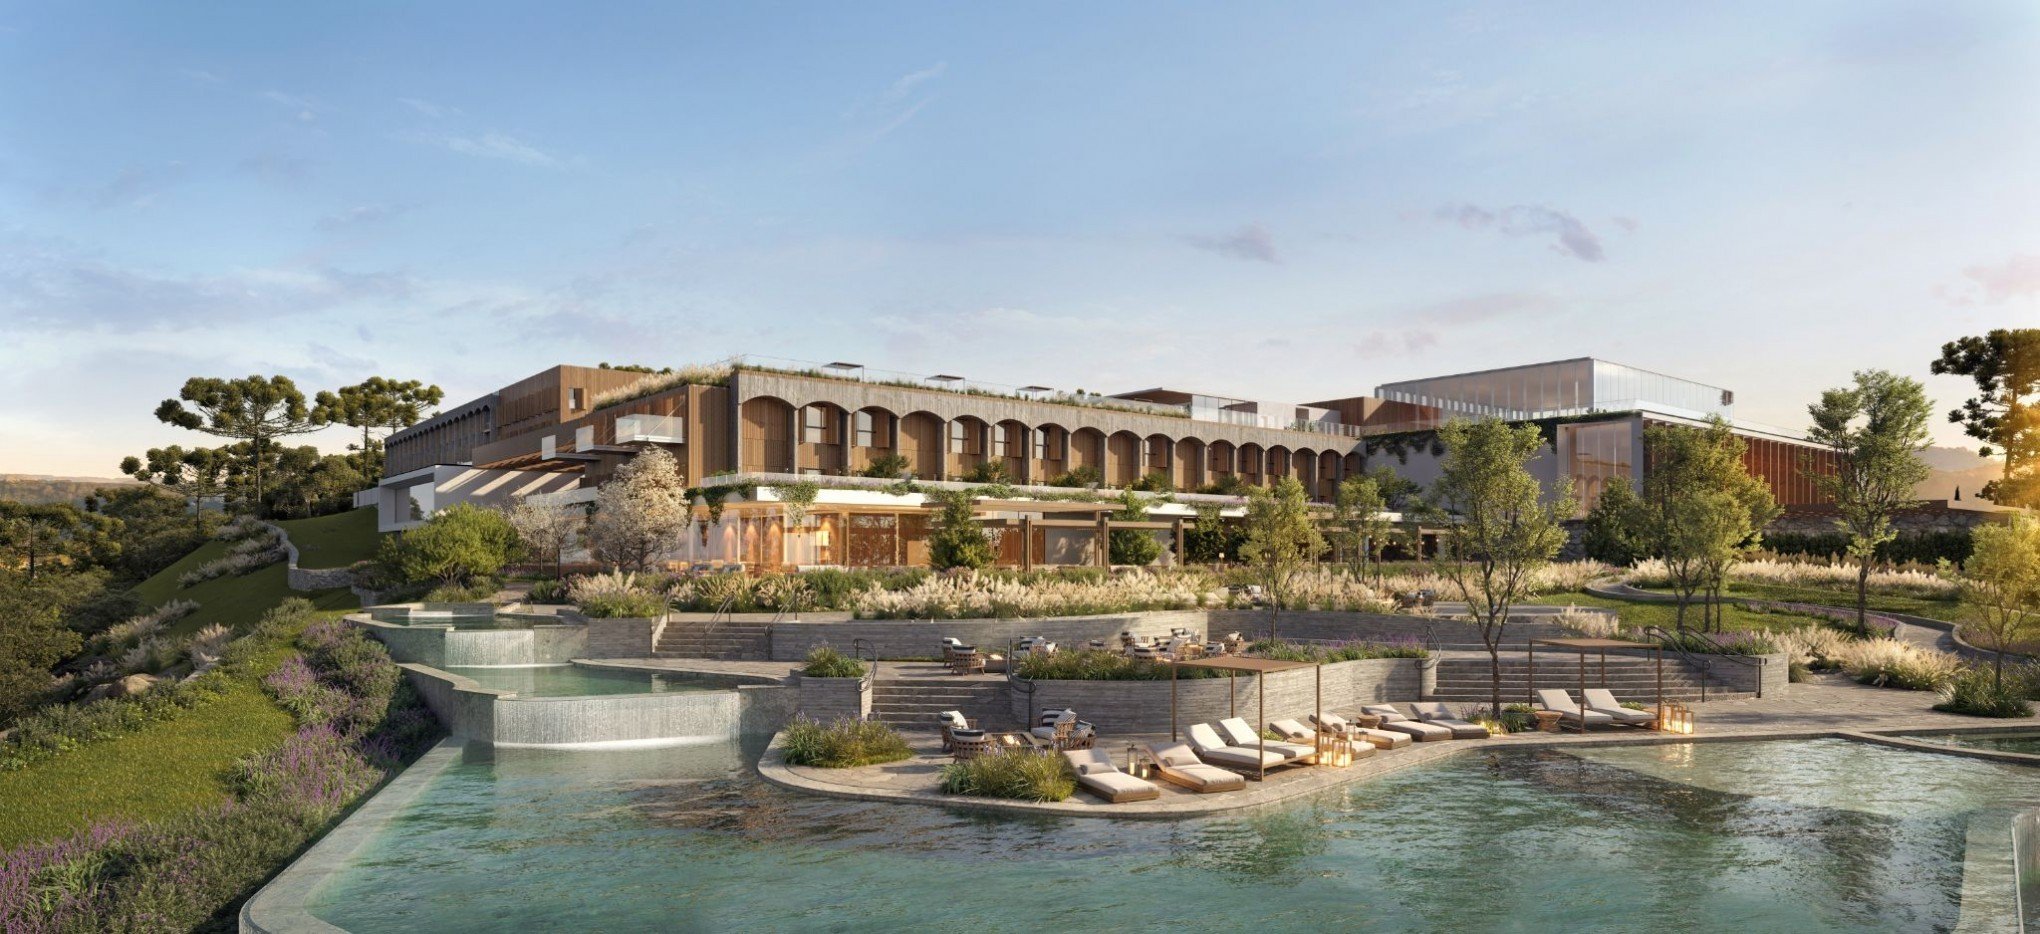 Projeto de modernização do Hotel Laje de Pedra ganha prêmio em arquitetura de hospitalidade